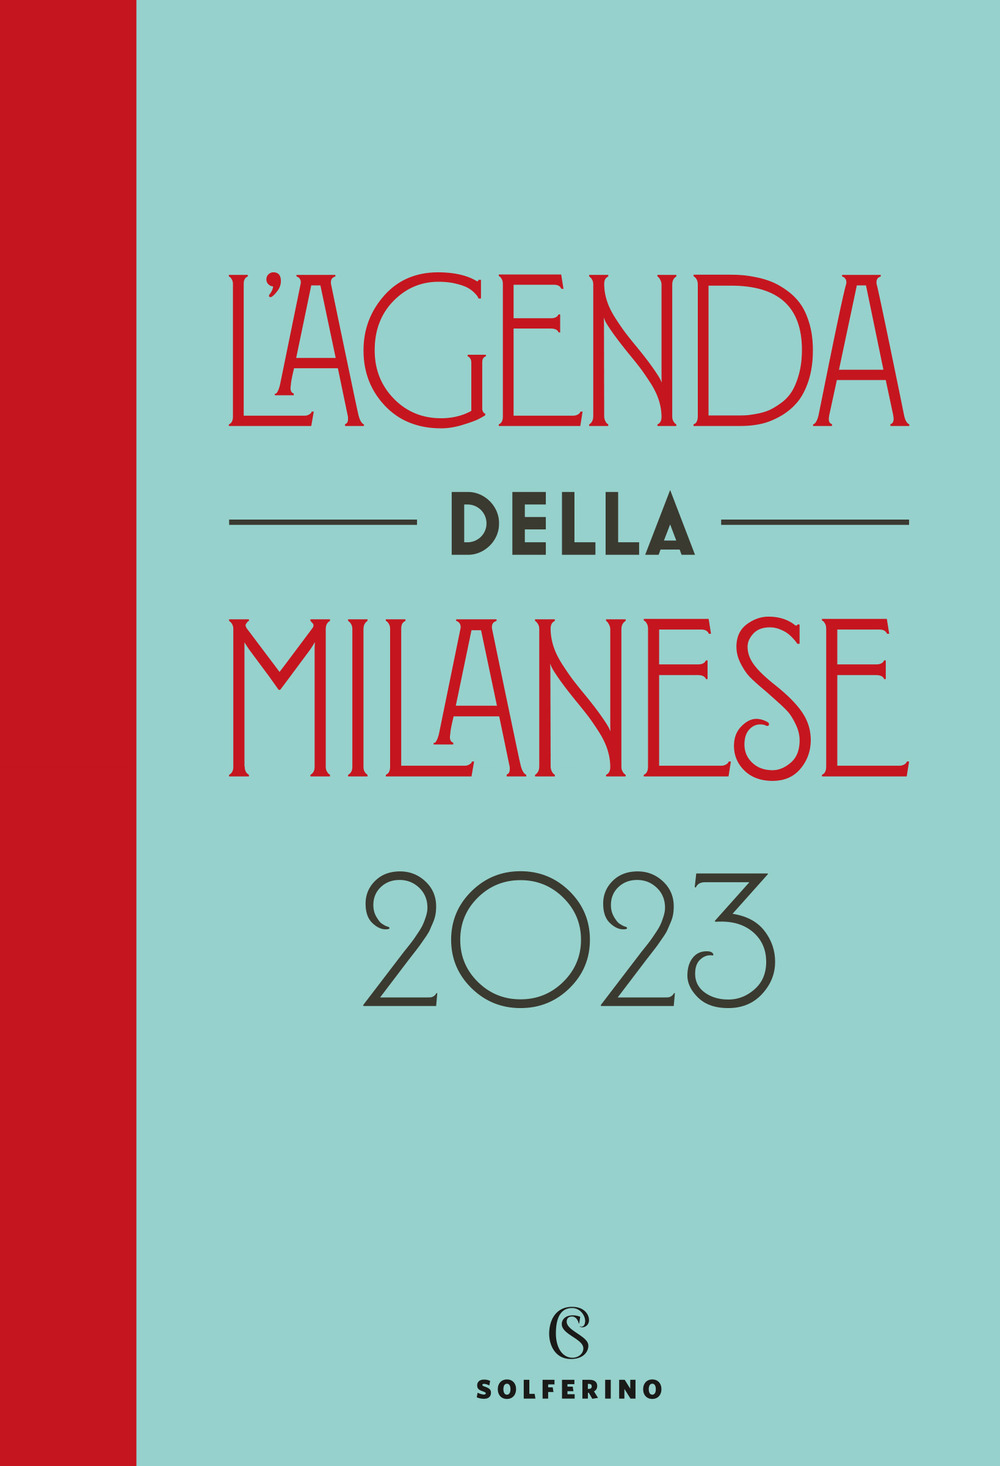 L'agenda della milanese 2023